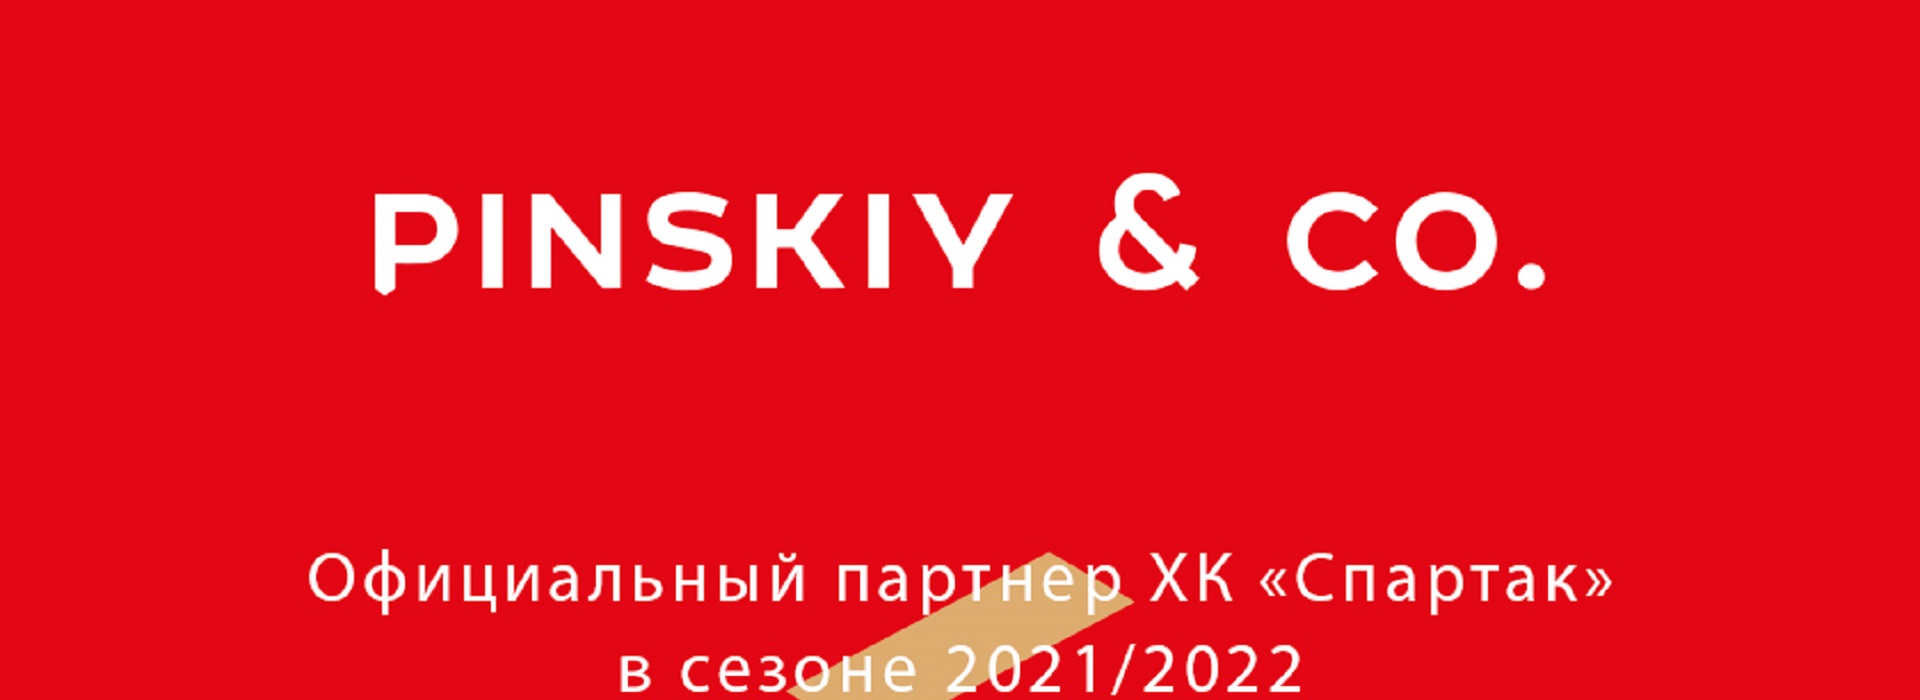 ХК «Спартак» и ресторанный холдинг Pinskiy & Co заключили договор о сотрудничестве